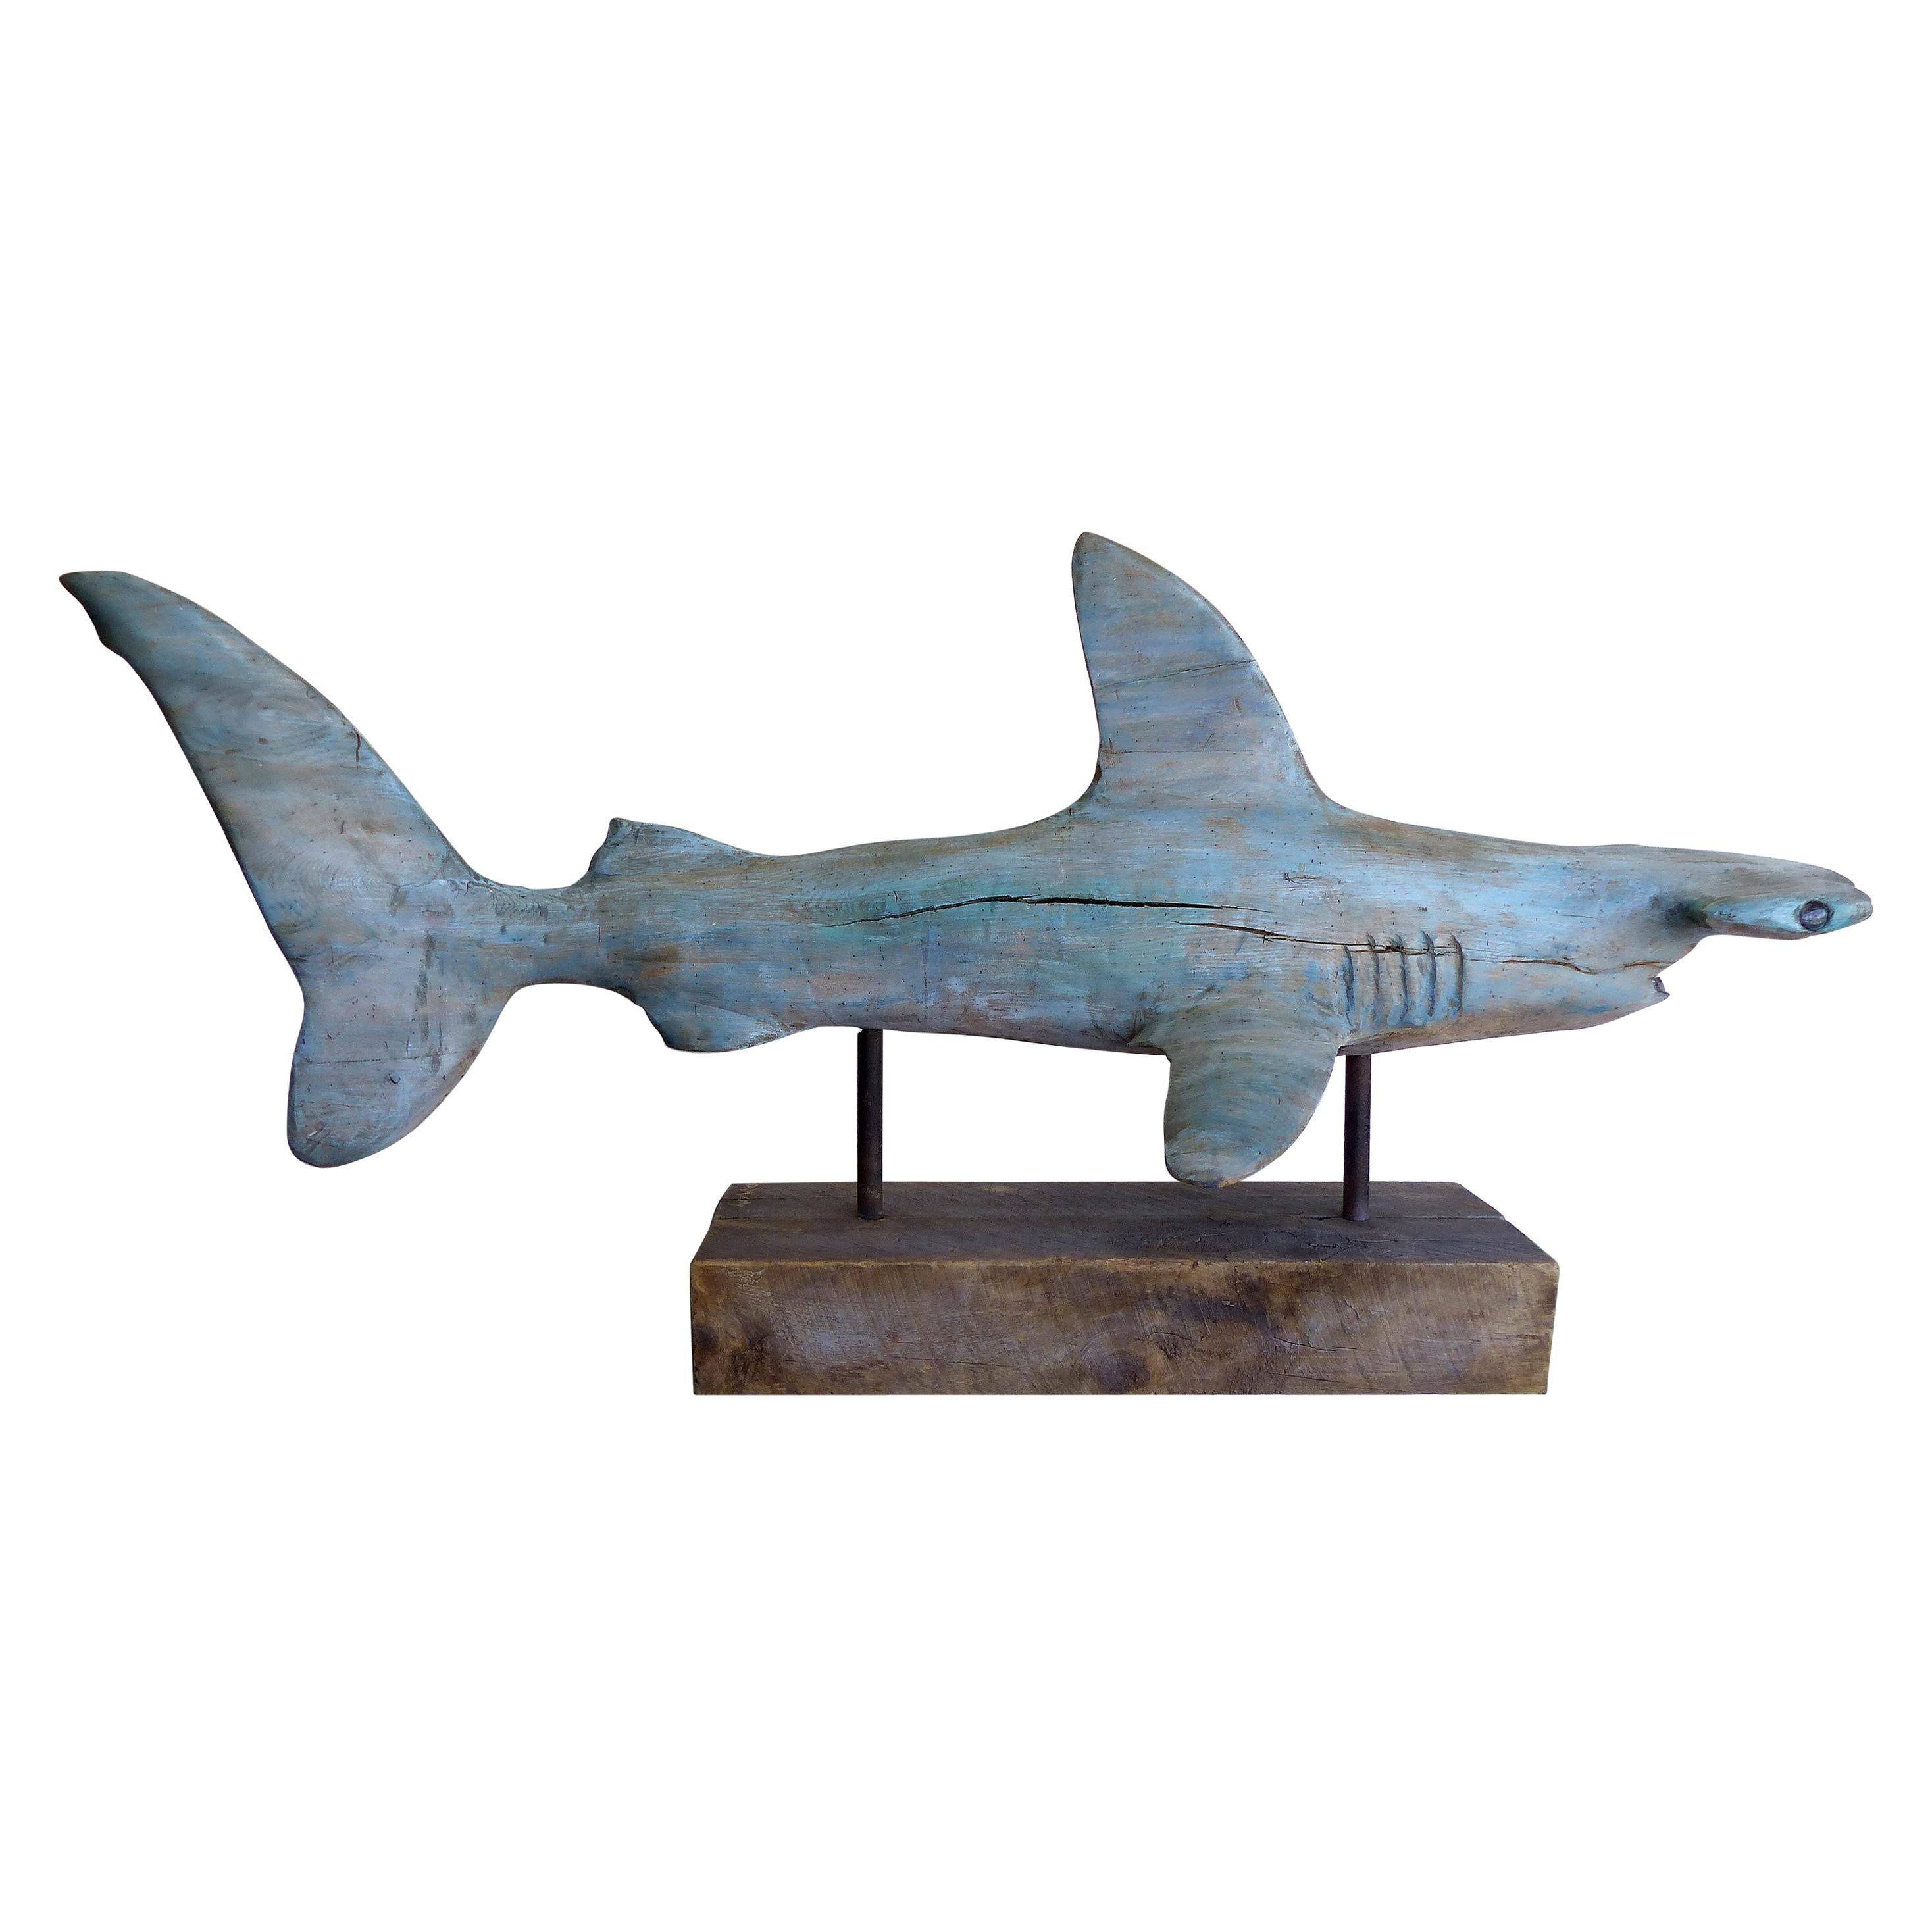 Davis Murphy Hand Carved Sculpture of a Hammerhead Shark, 2018